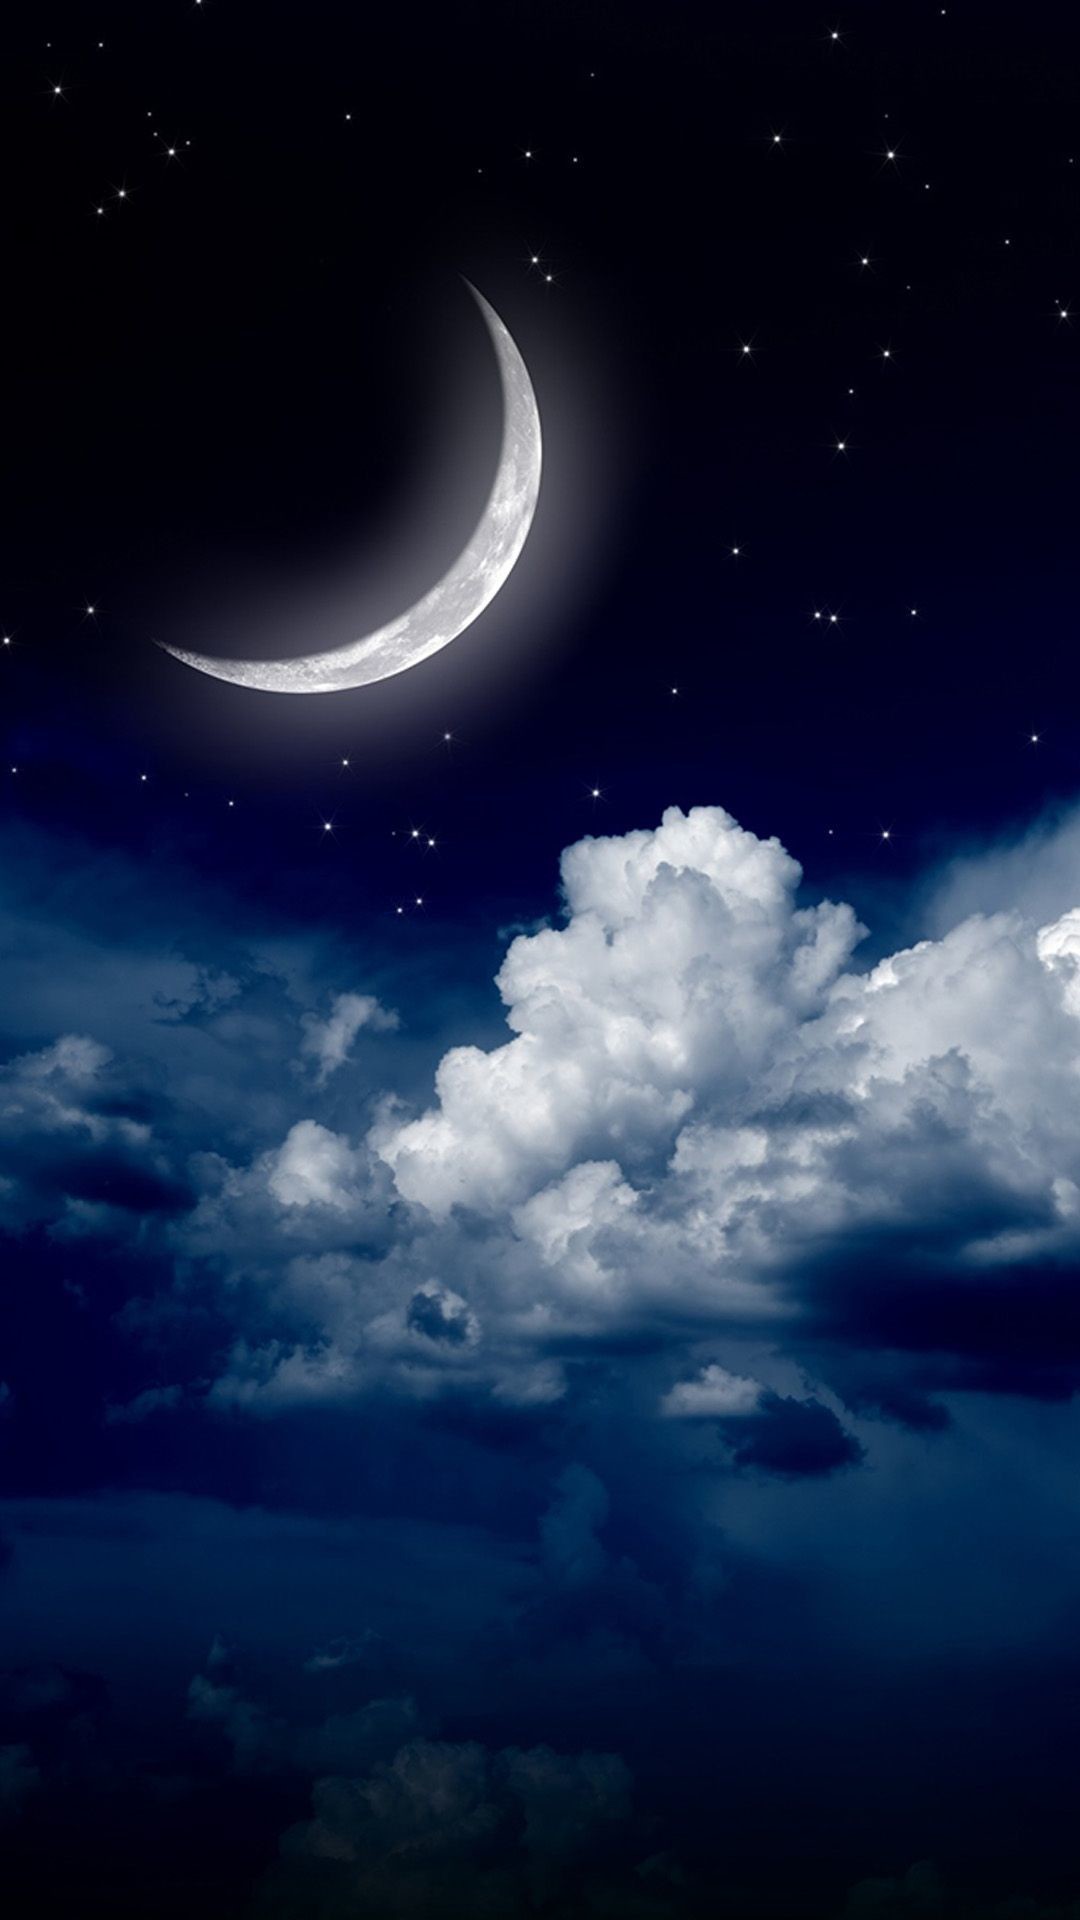 1080x1920, Sky Clouds Moon - Fondos De Pantalla Hd 4k - HD Wallpaper 